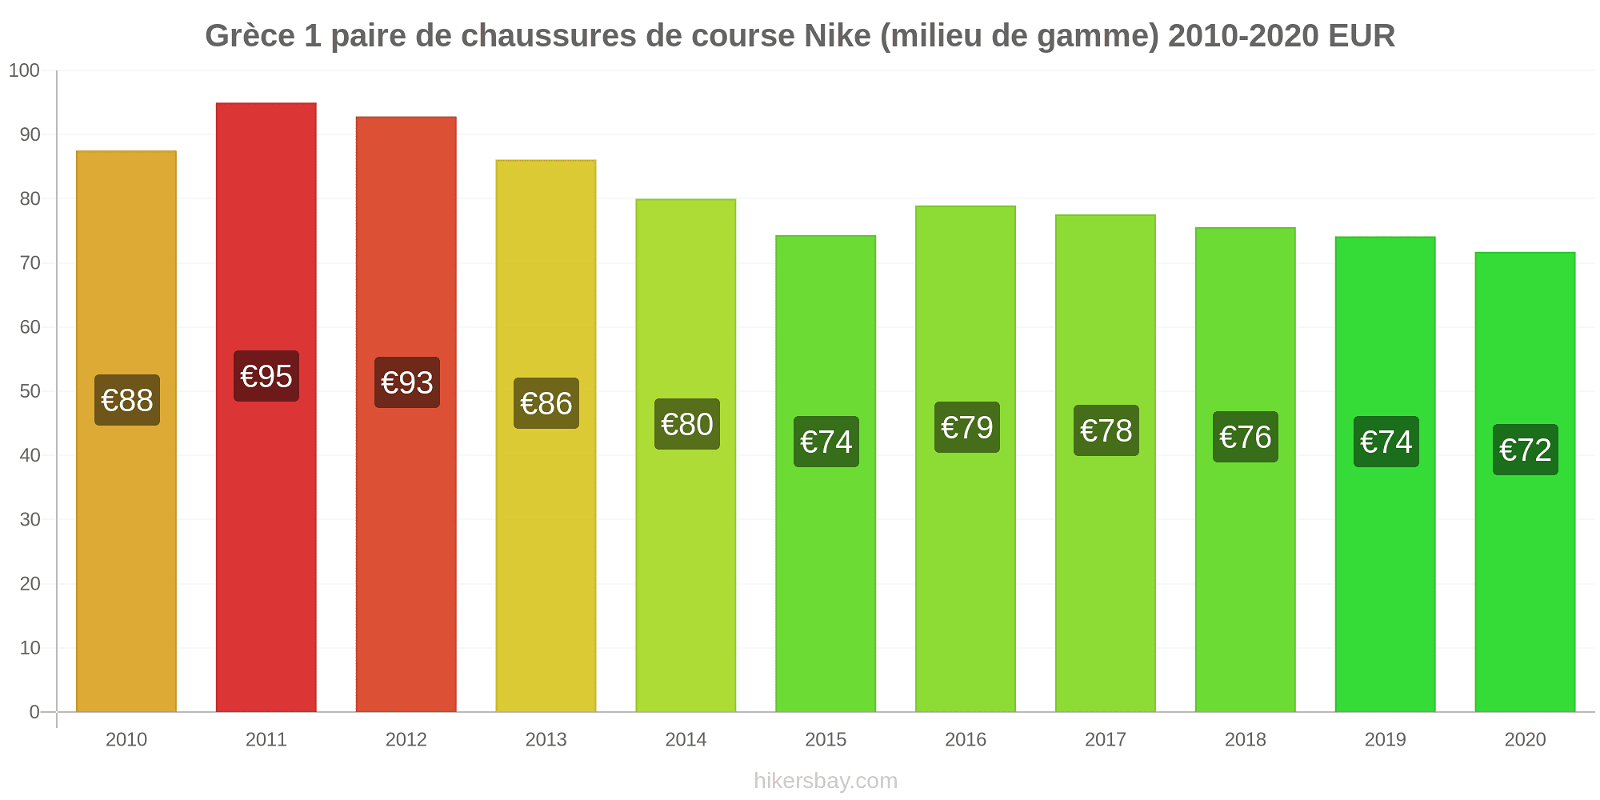 Grèce changements de prix 1 paire de chaussures de course Nike (milieu de gamme) hikersbay.com